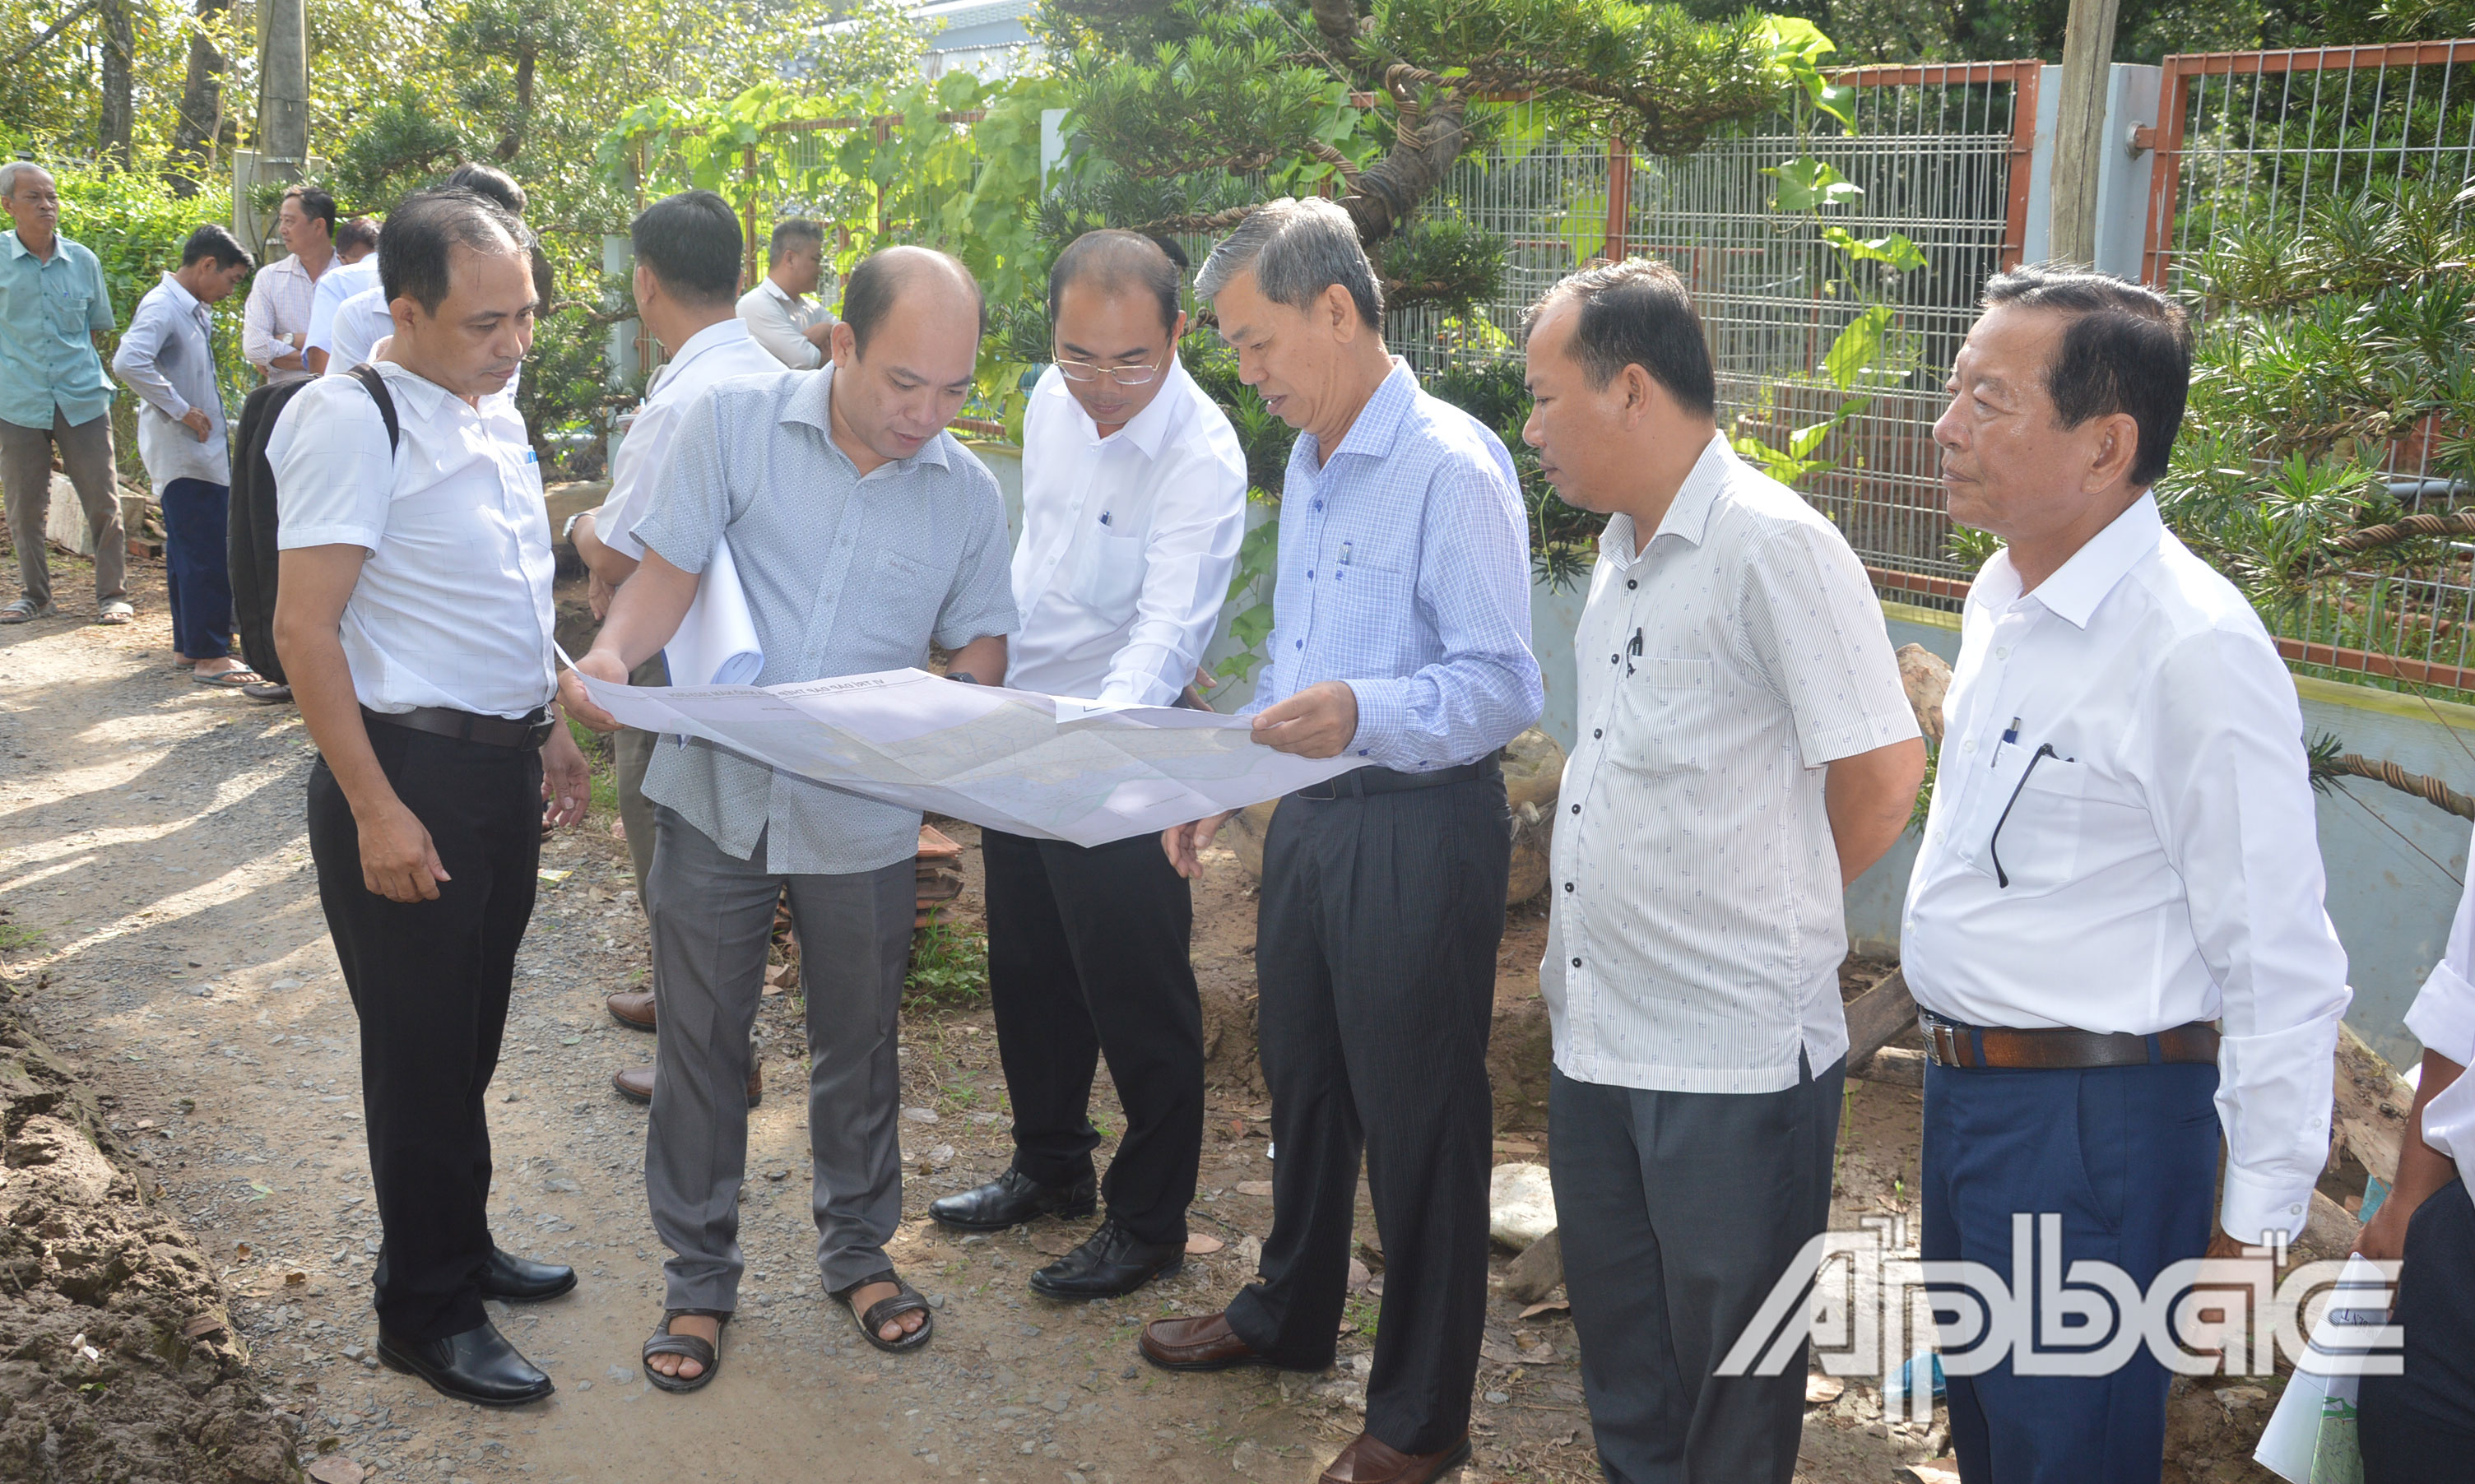 Lãnh đạo Sở NN&PTNT khảo sát vị trí đắp 3 đập thép trên địa bàn huyện Cai Lậy để ngăn mặn, bảo vệ vùng chuyên canh cây ăn trái.